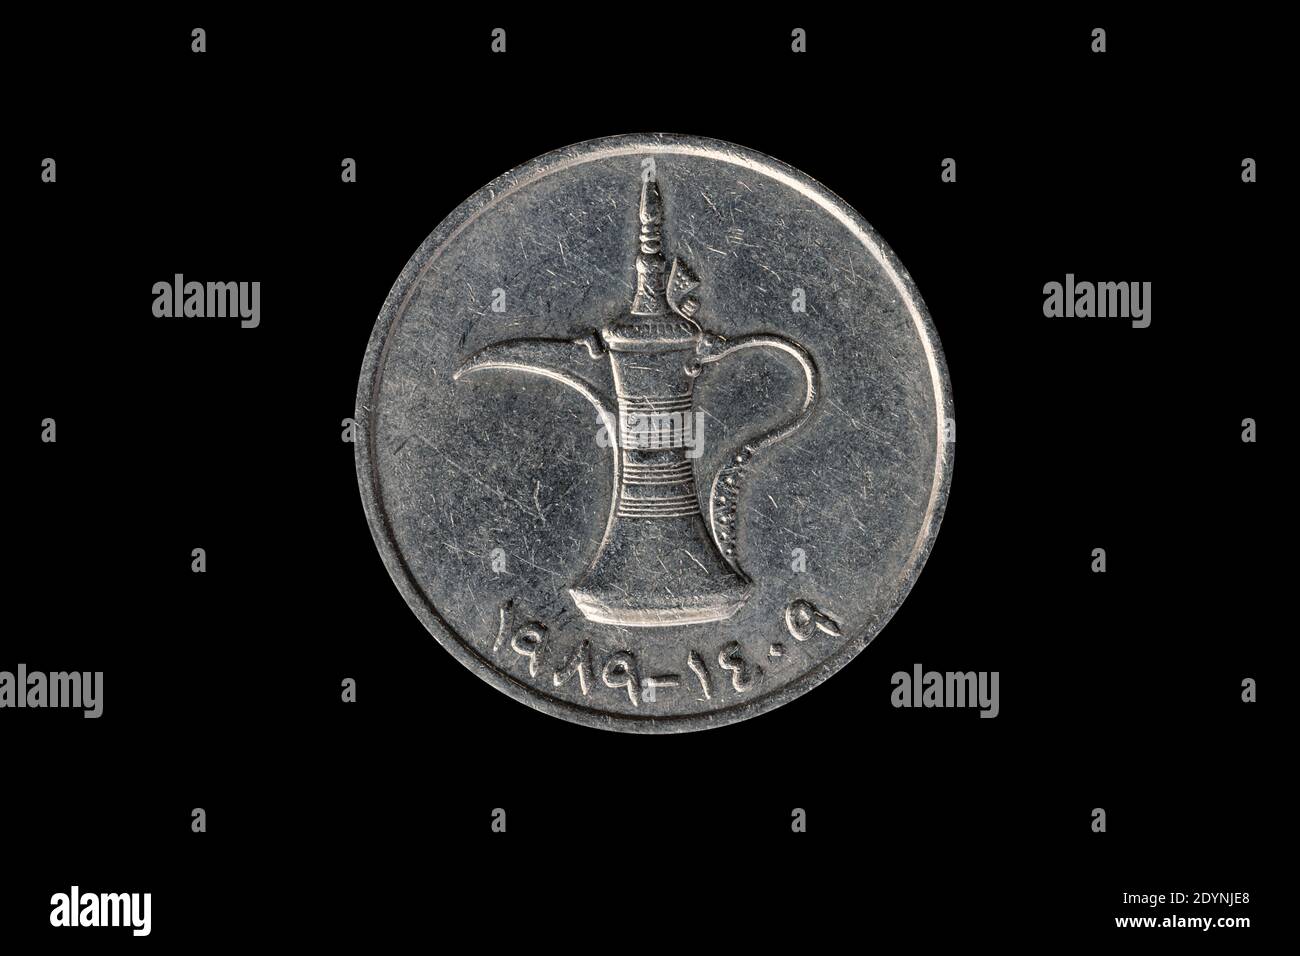 Emirati Arabi Uniti 1 moneta di Dirham che mostra una tradizionale caffettiera araba Dallah tagliata e isolata su sfondo nero, immagine di foto d'inventario Foto Stock